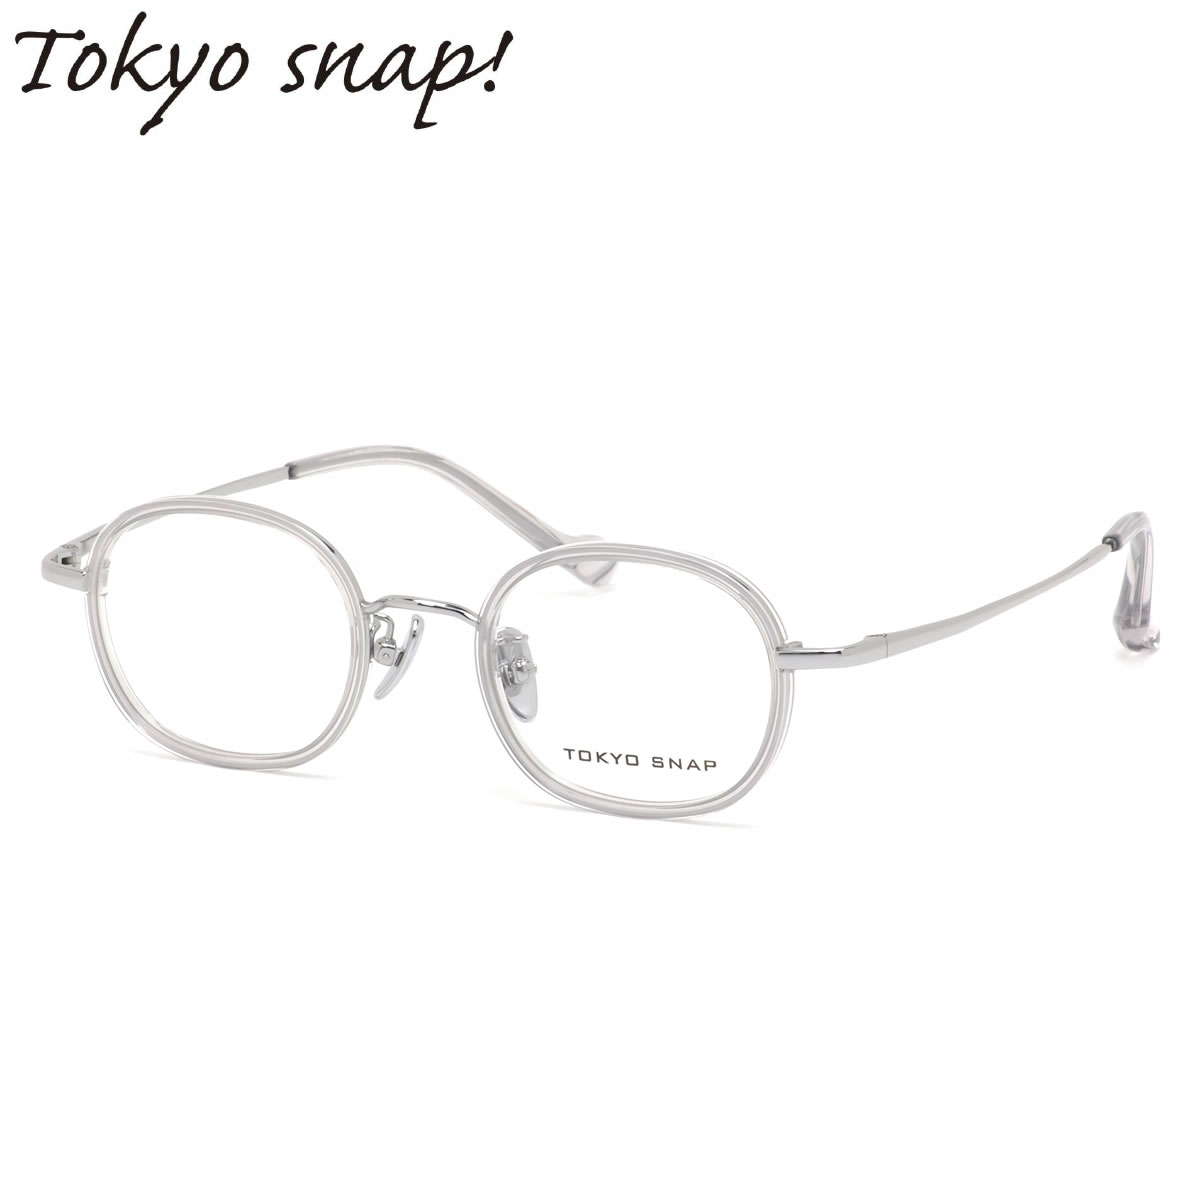 トウキョウスナップ TSP-1044 07 43 メガネ TOKYO SNAP トウキョウスナッププラス セル巻き インナーリム チタニウム MADE IN JAPAN 国産 日本製 メンズ レディース